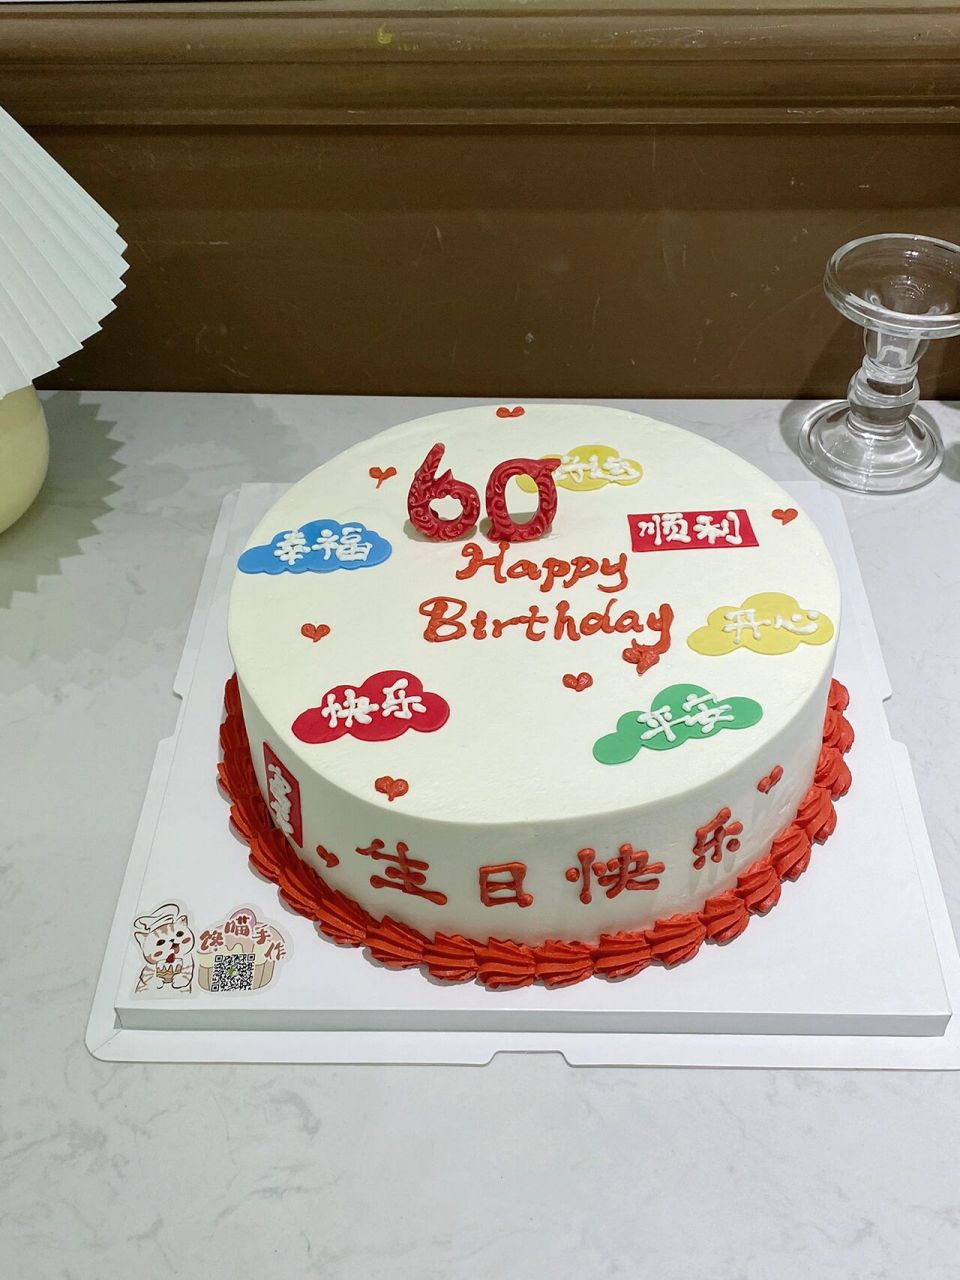 60岁祝福语生日蛋糕 男士长辈爸爸爷爷